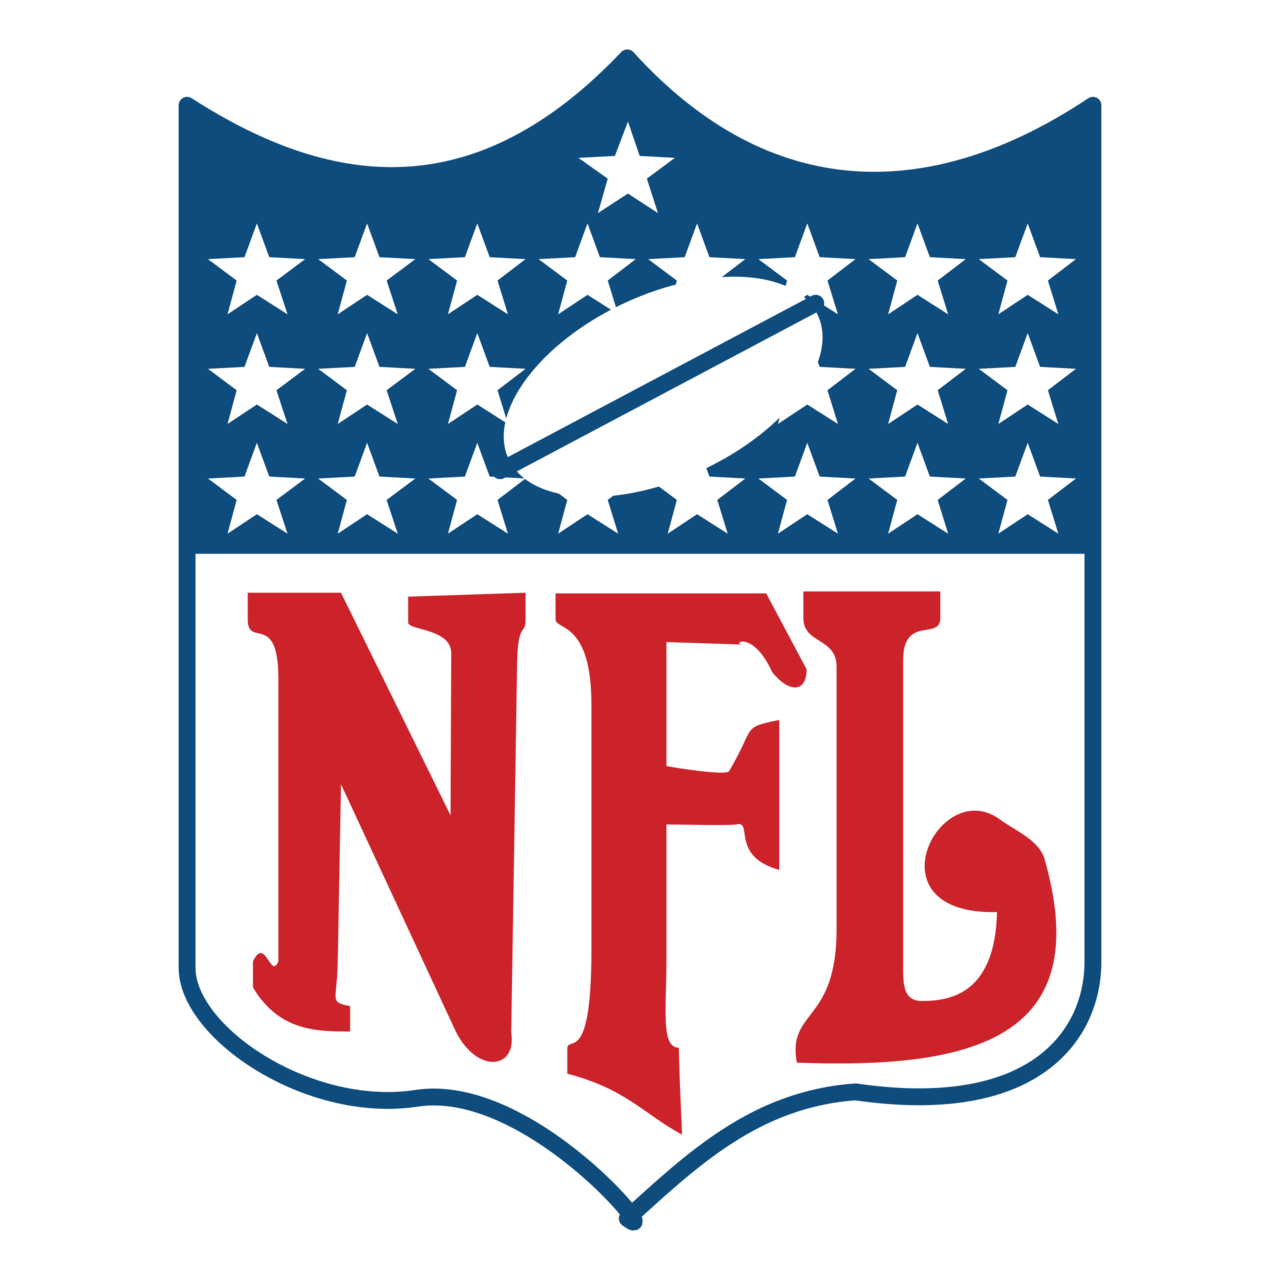 Fichier dimage PNG du logo NFL - PNG All